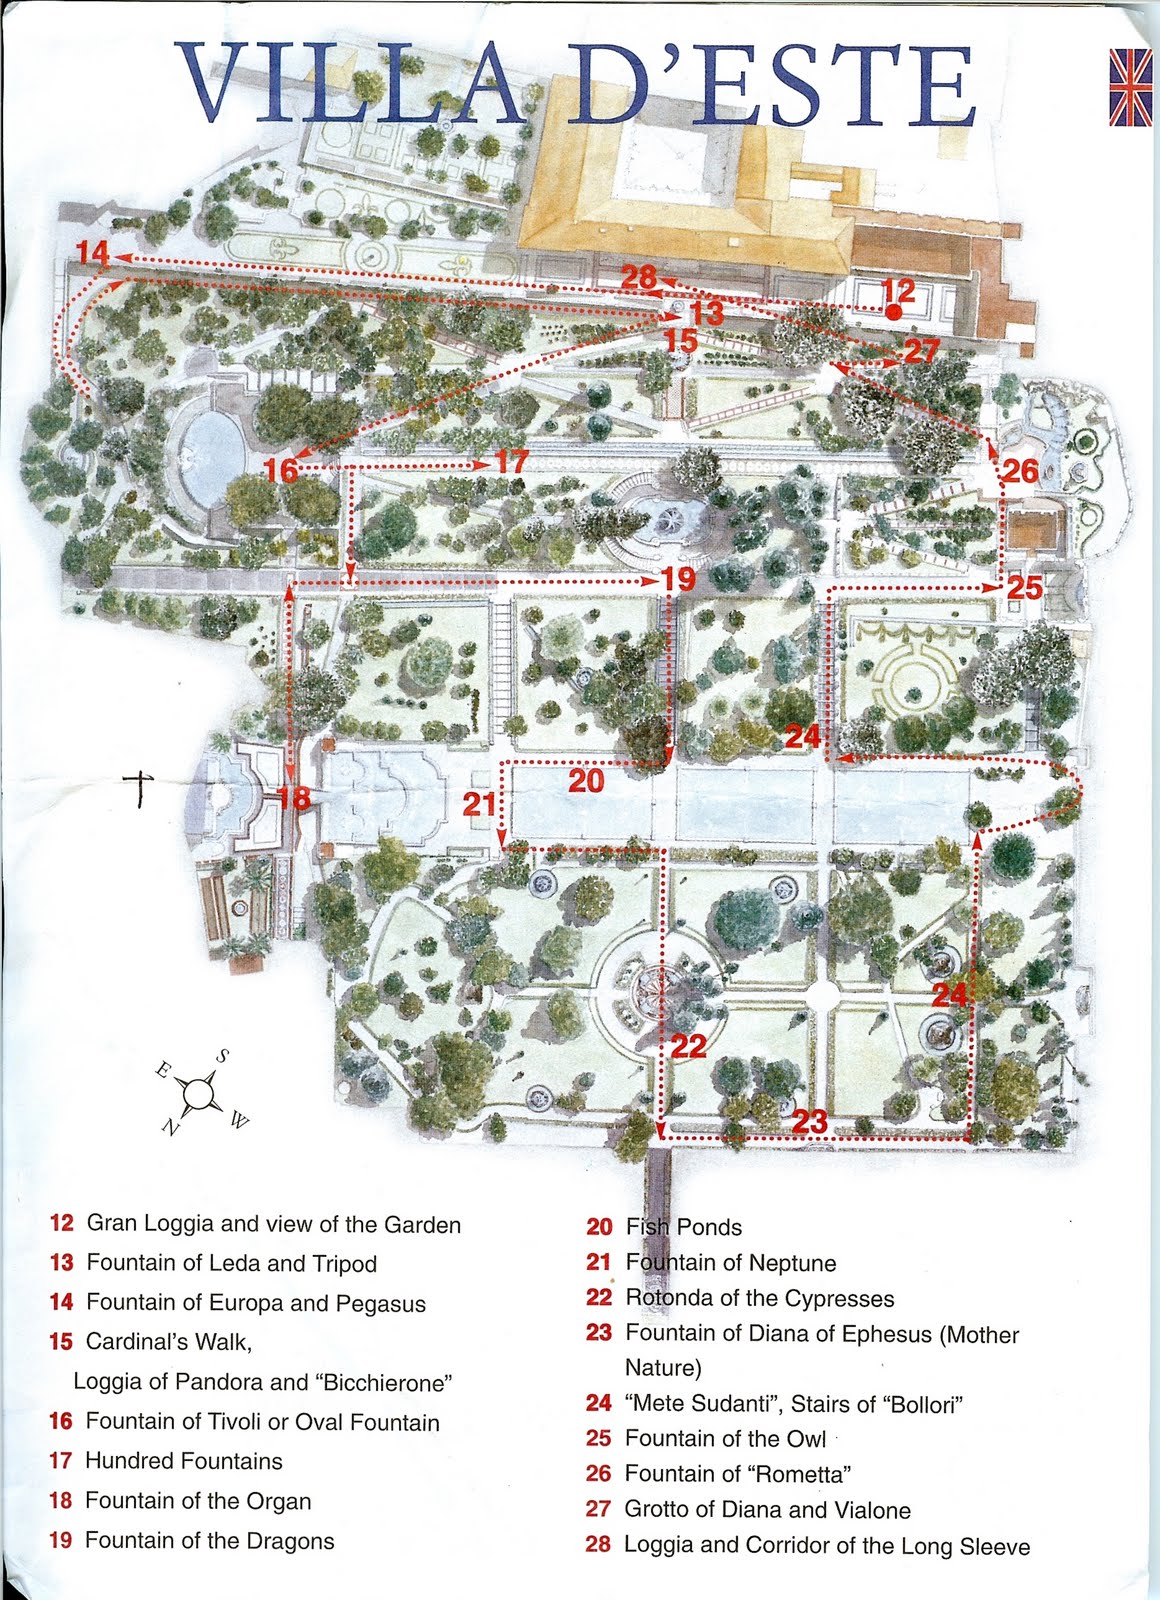 Mapa de las esculturas y principales puntos que ver en Villa d'Este